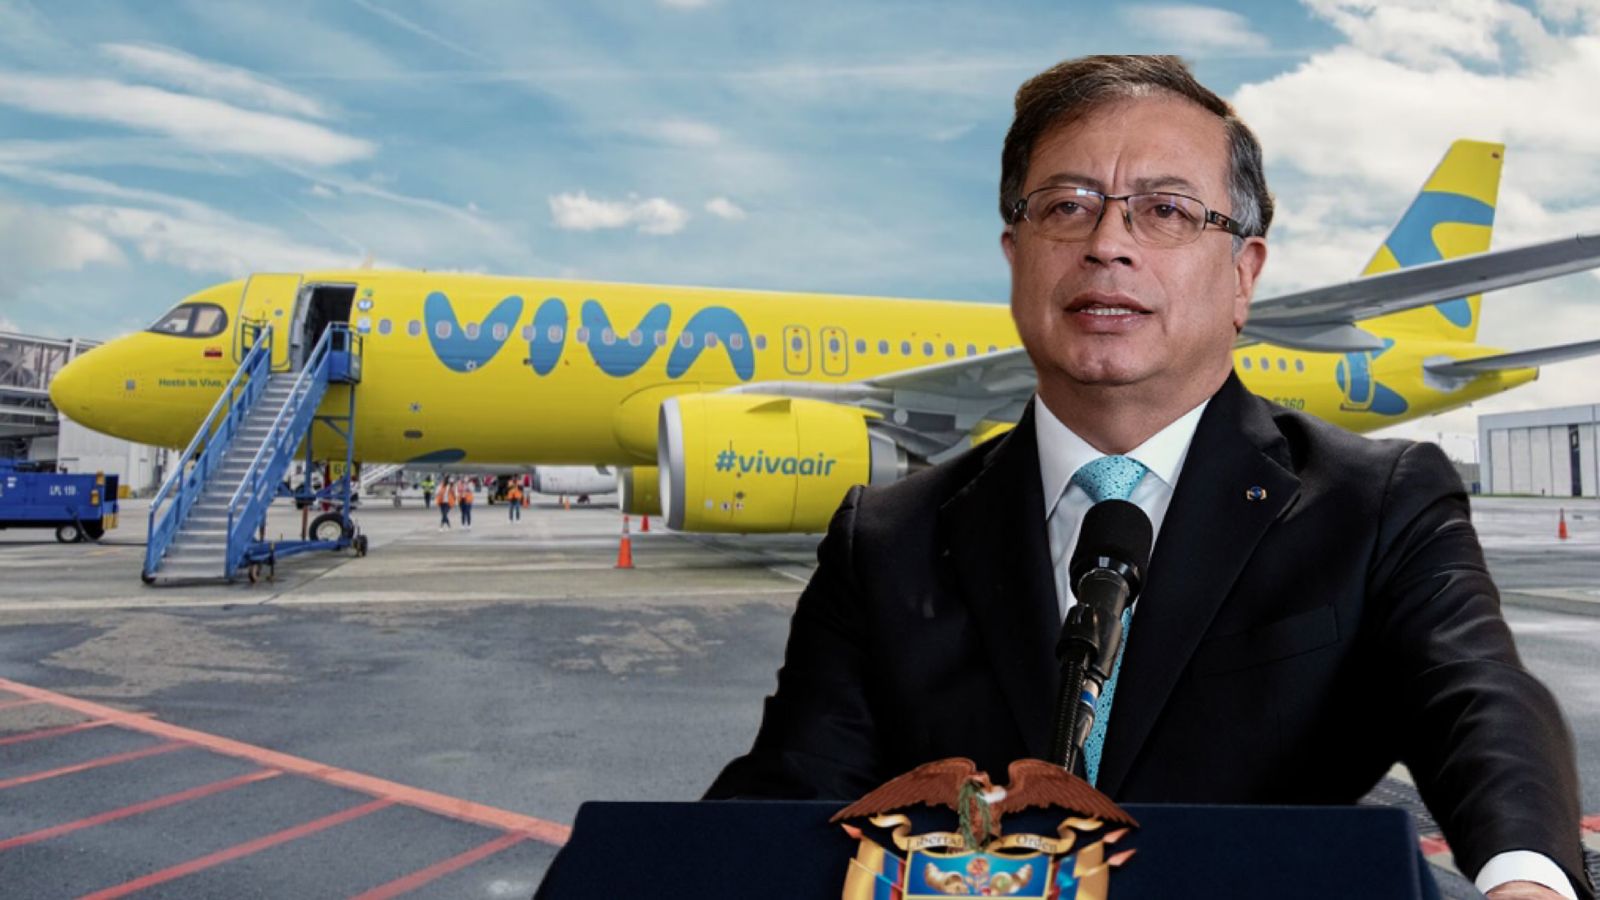 Gustavo Petro programó reunión extraordinaria sobre el caso Viva Air